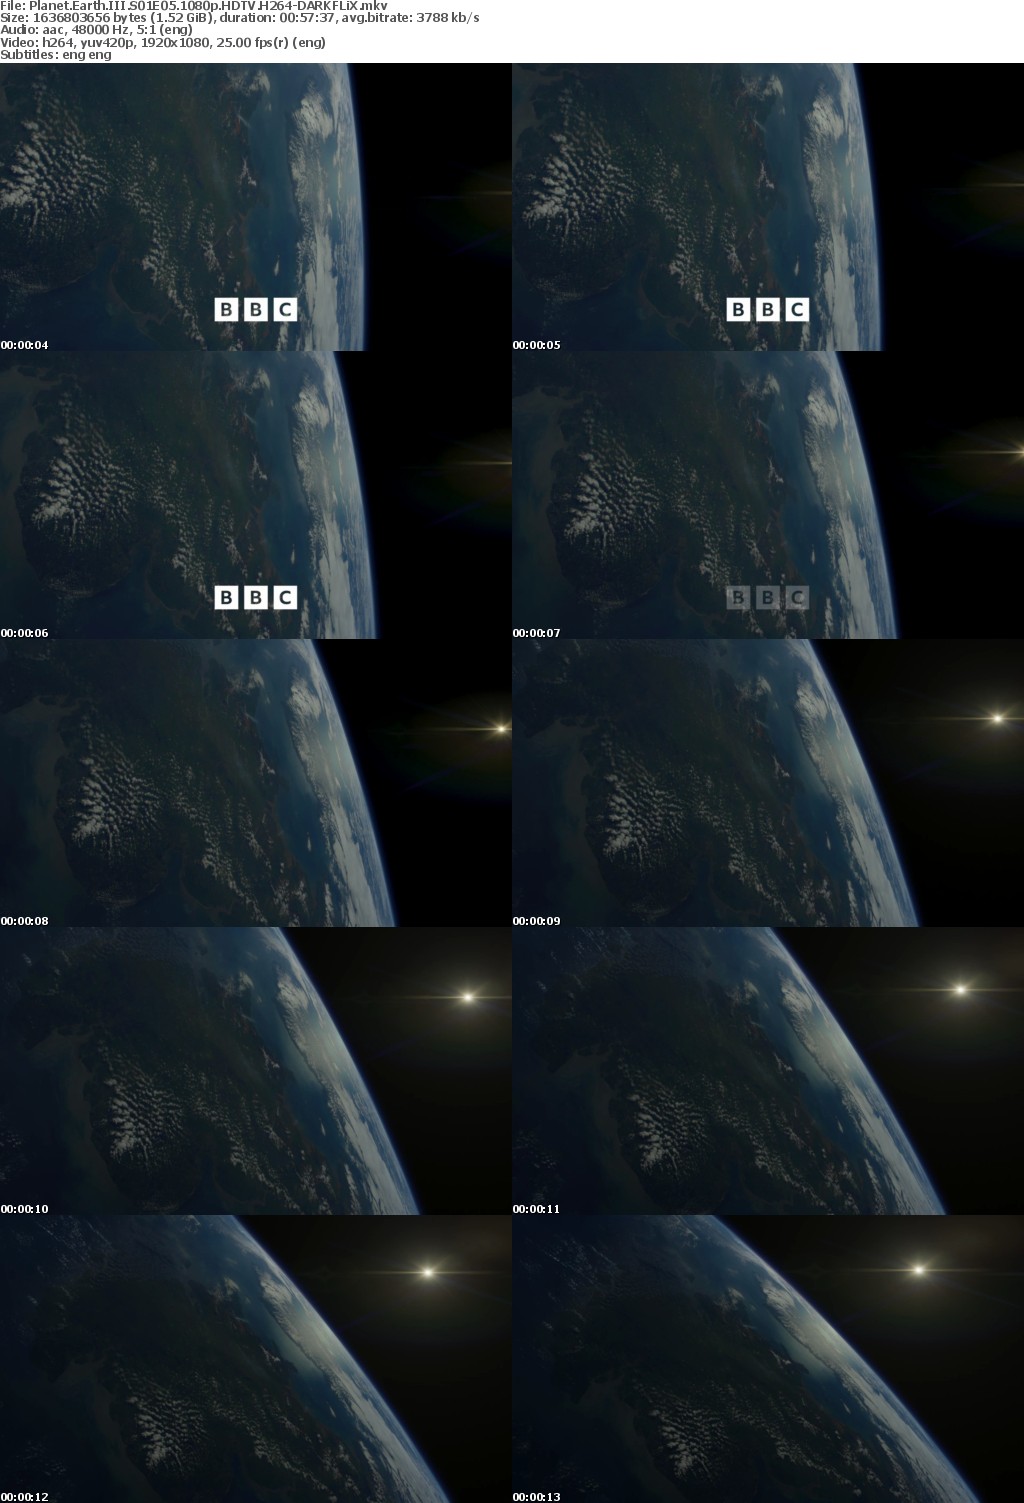 Planet Earth III S01E05 1080p HDTV H264-DARKFLiX